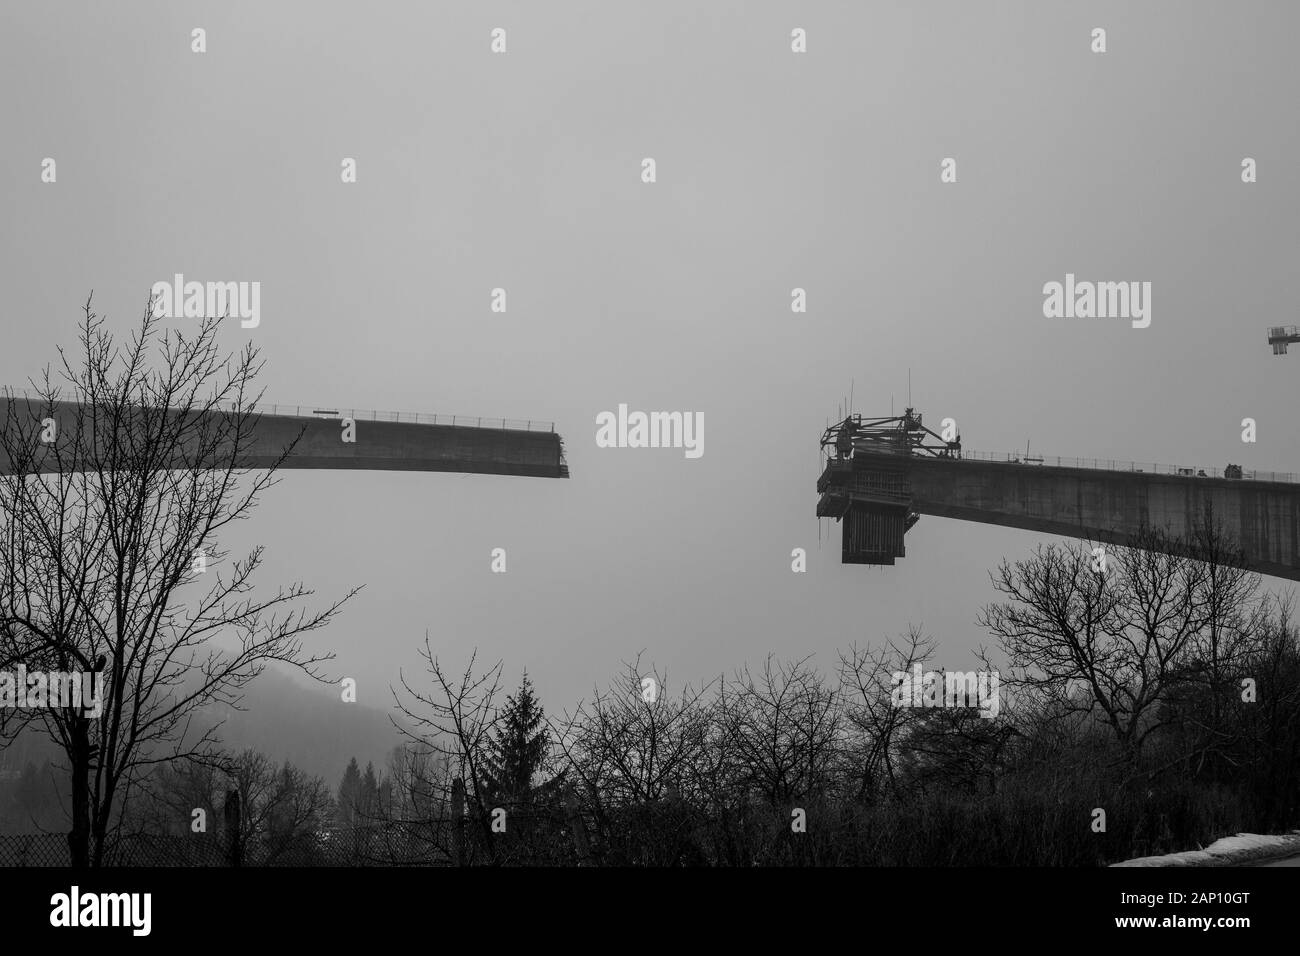 Fitta nebbia invernale e costruzione di ponti in cemento ad alta velocità nella città di Gabrovo, nel nord della Bulgaria, in Europa. Parte della circonvallazione, sponsorizzata dall'Unione europea. Immagine in bianco e nero Foto Stock